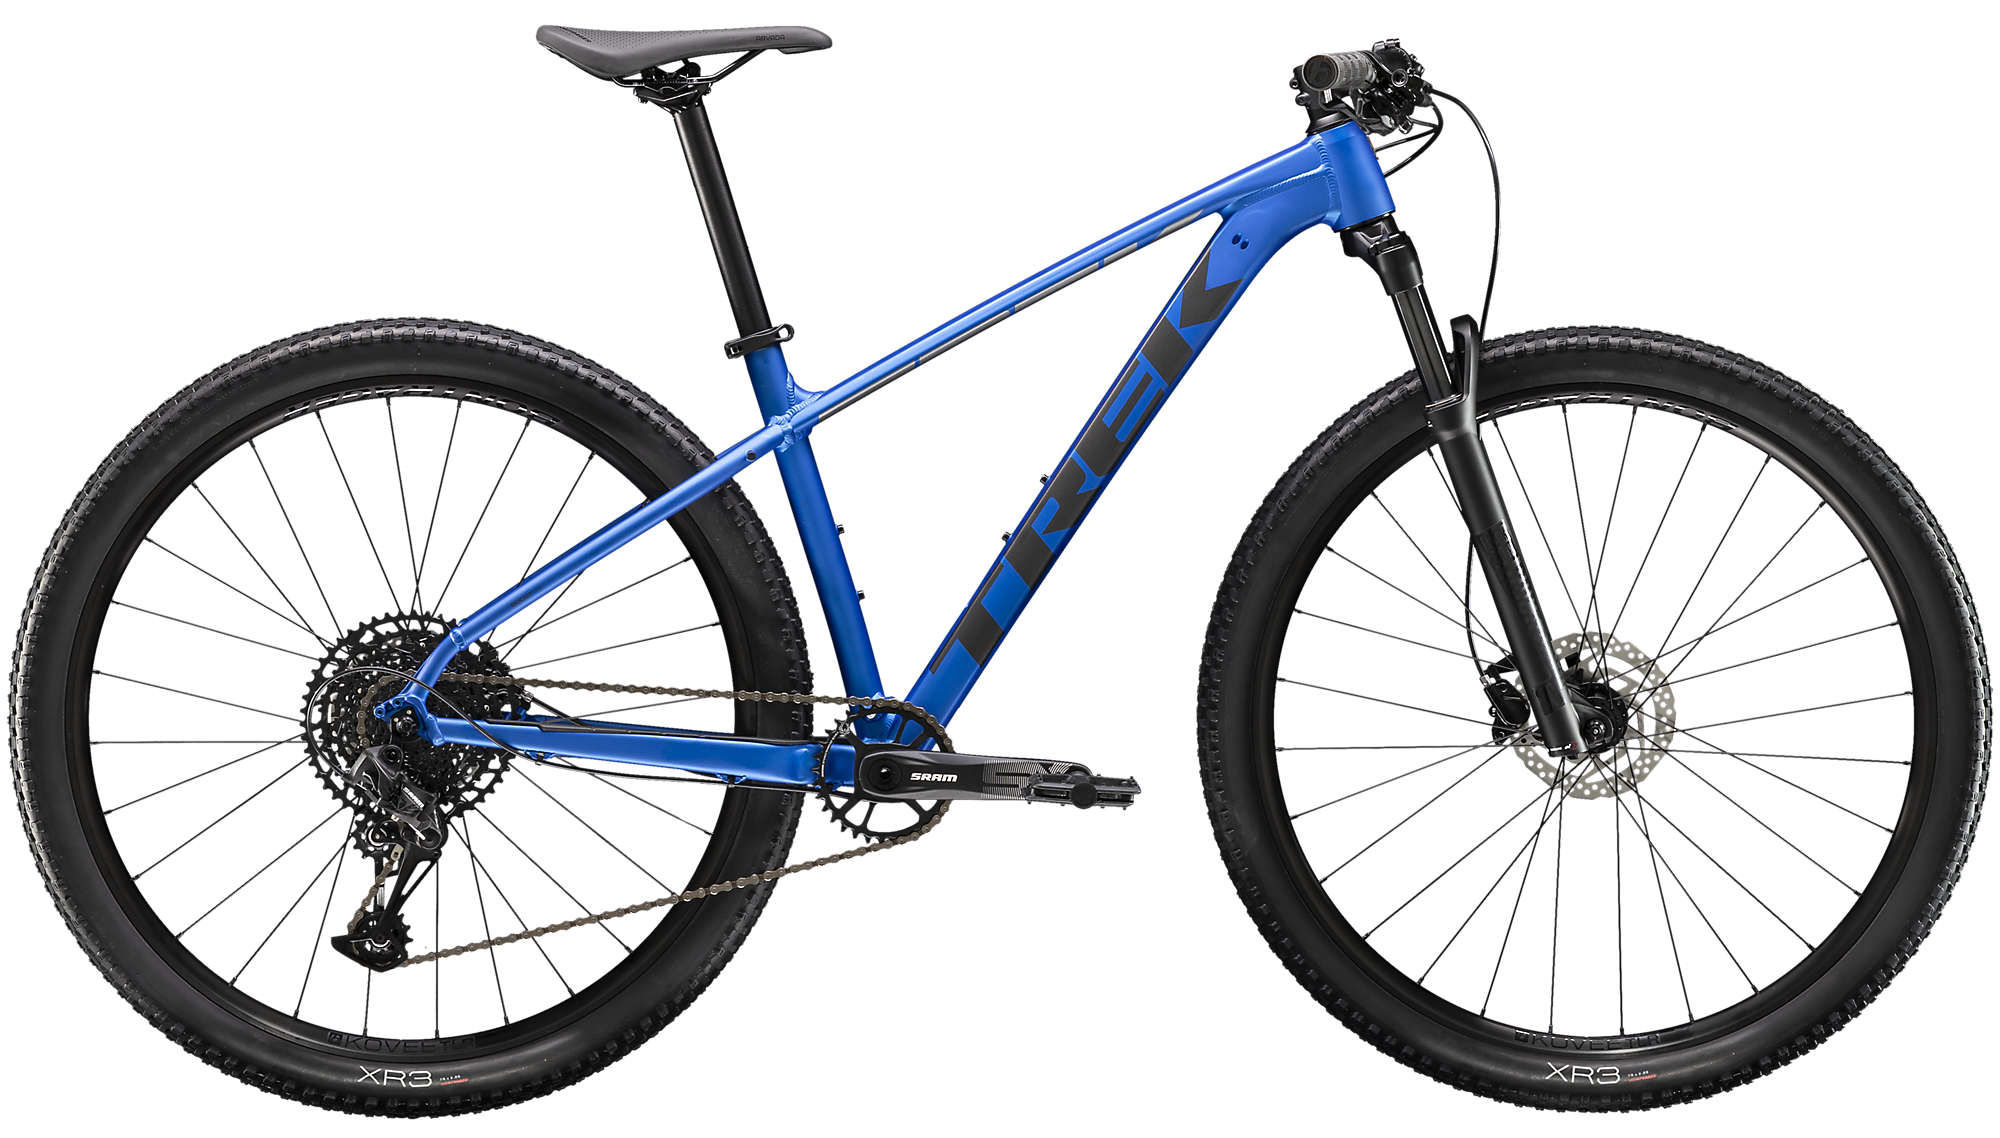  Отзывы о Горном велосипеде Trek X-Caliber 8 29 2020